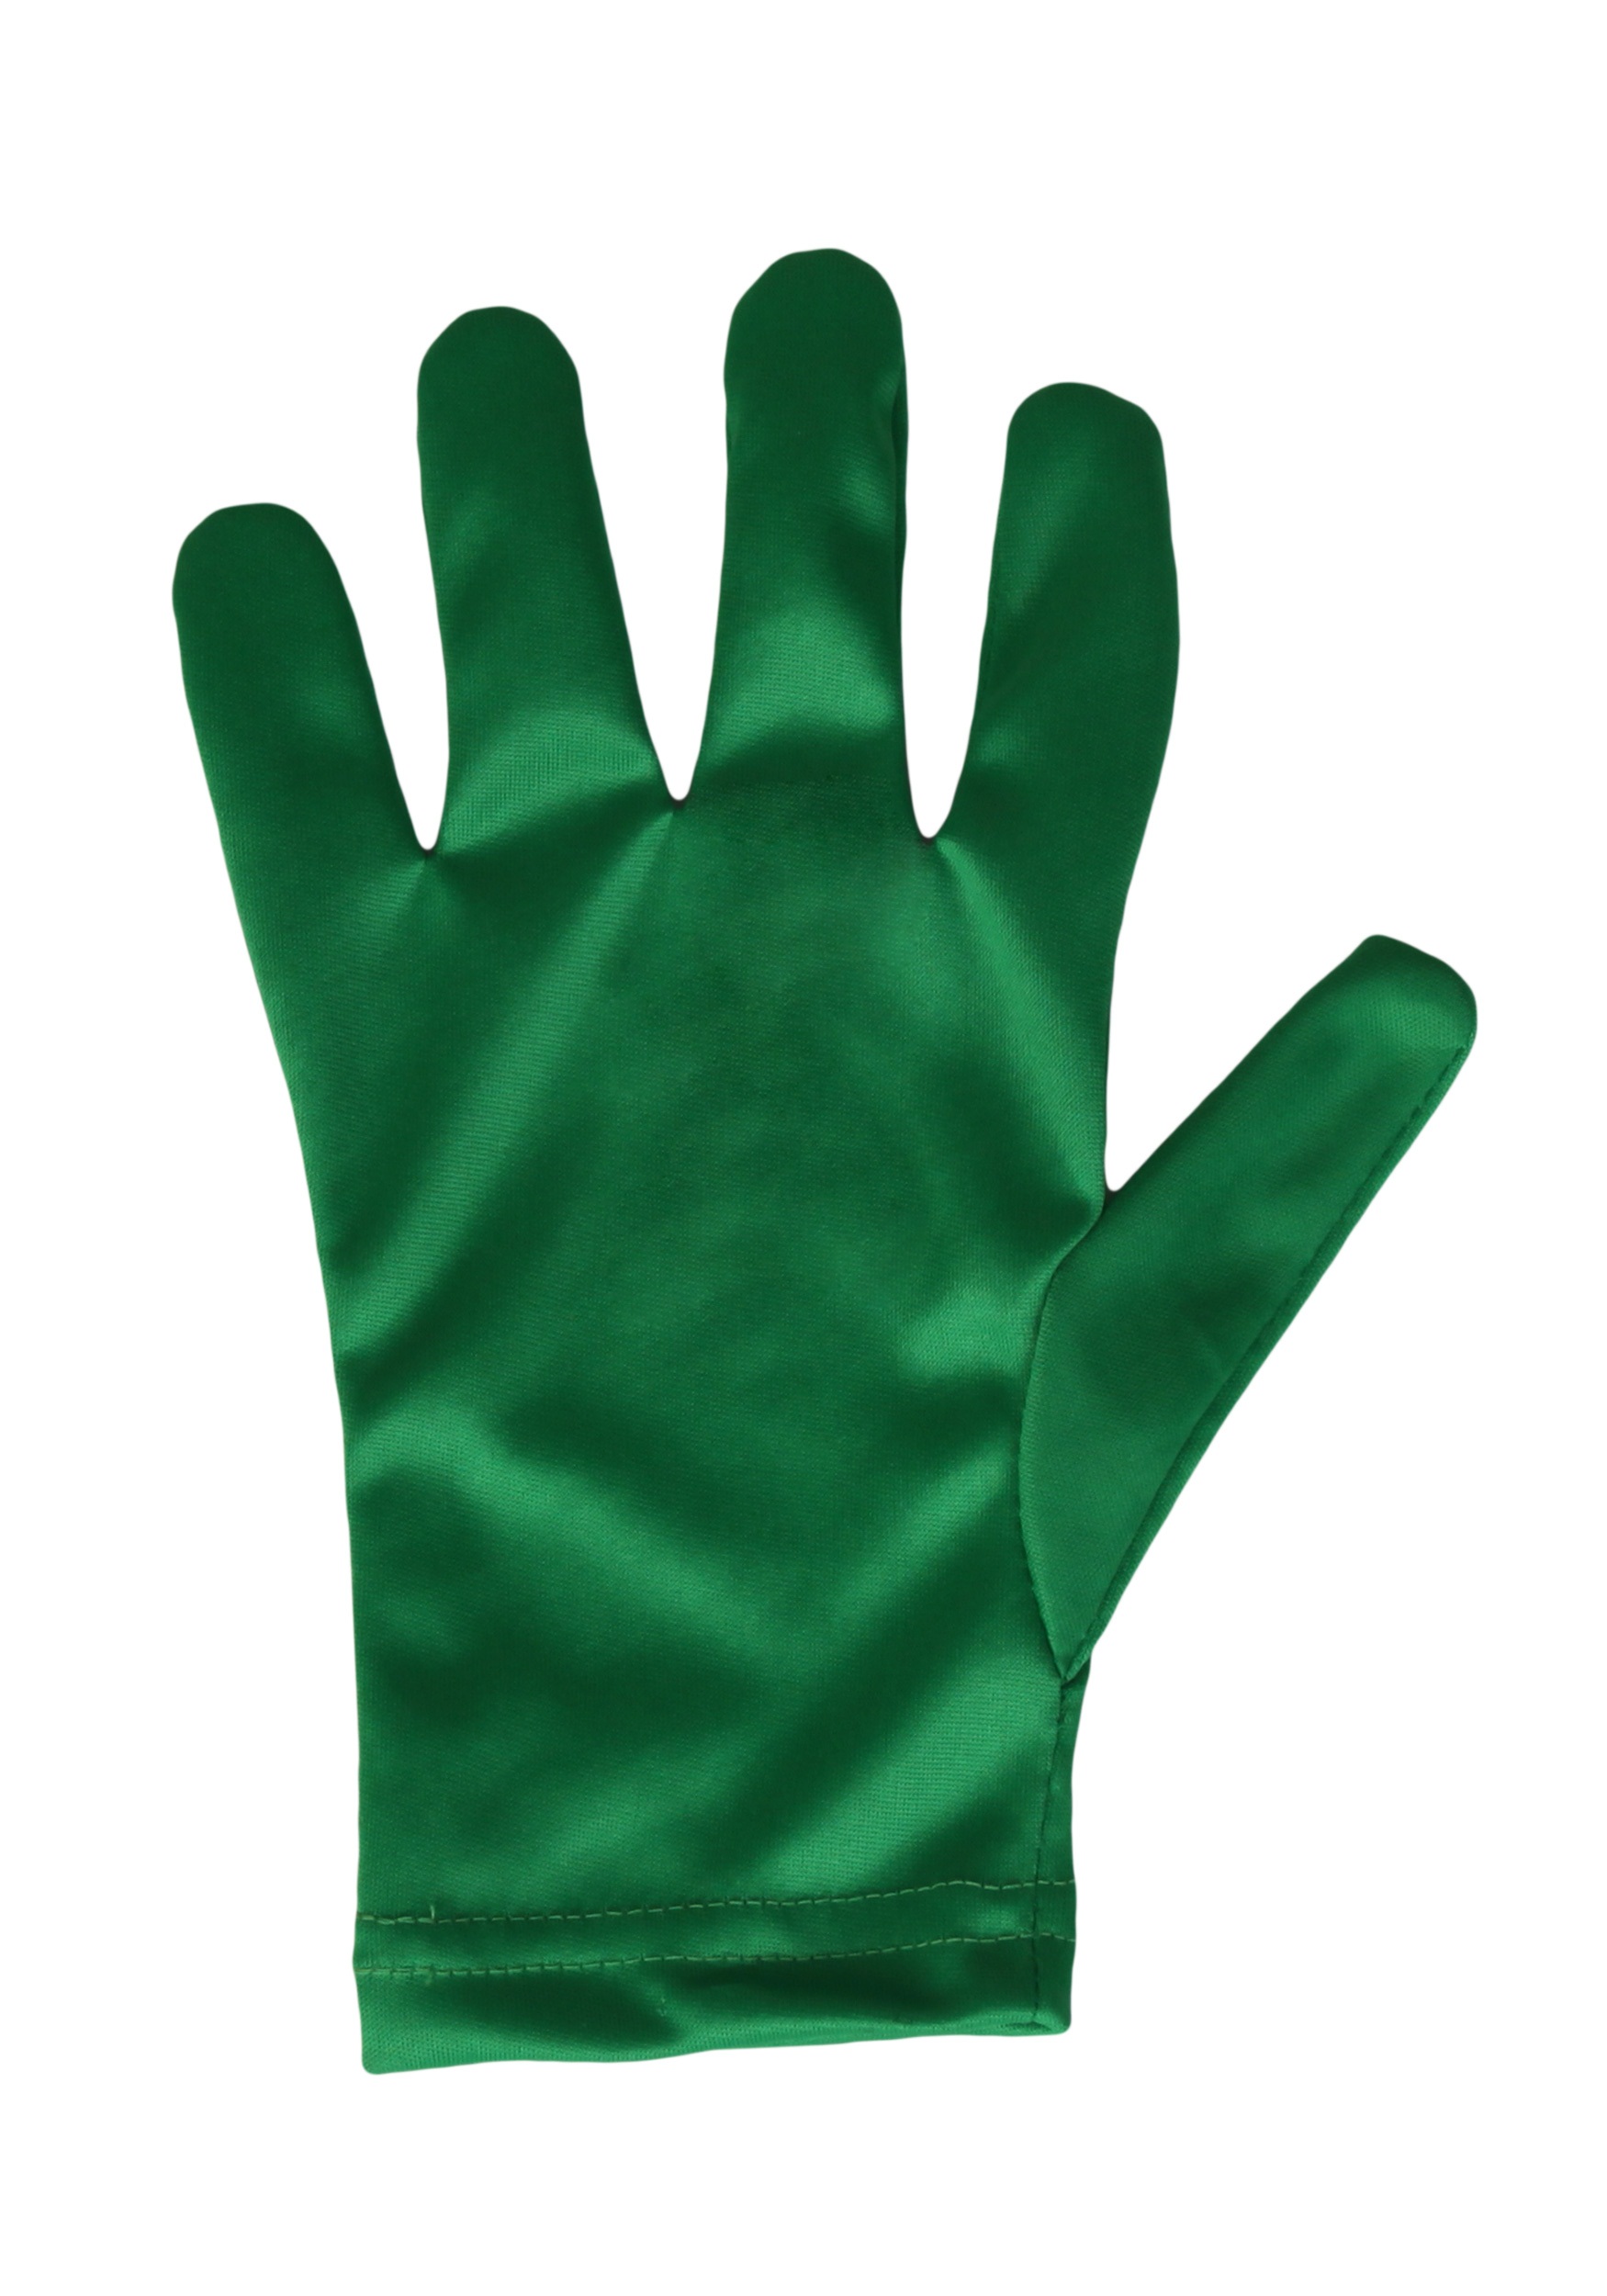 Green Gloves for Kids